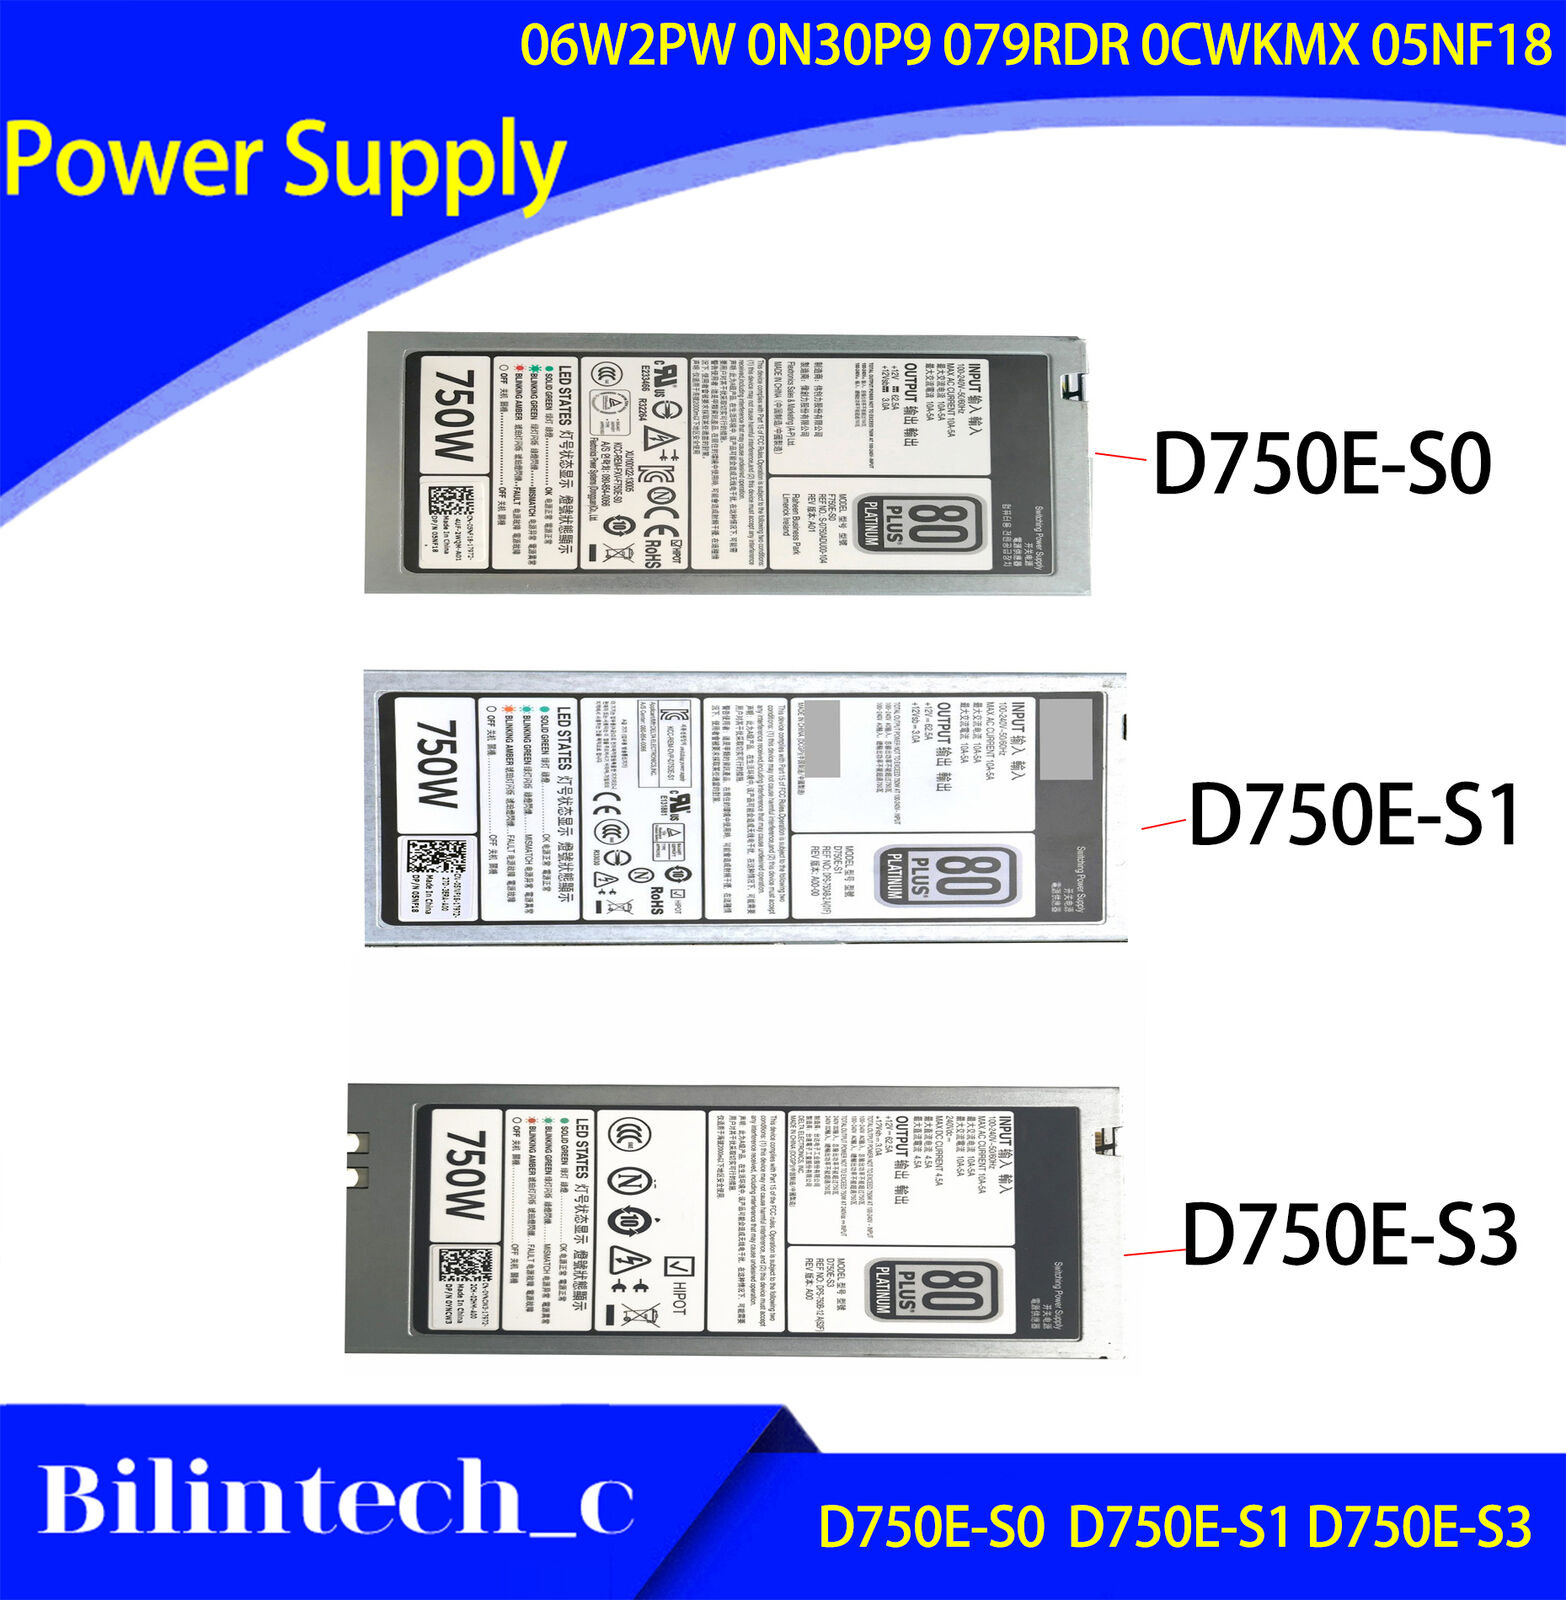 FOR DELL R620 520 720 820 920 750W Power supply F750E-S0 06W2PW 0N30P9 05NF18